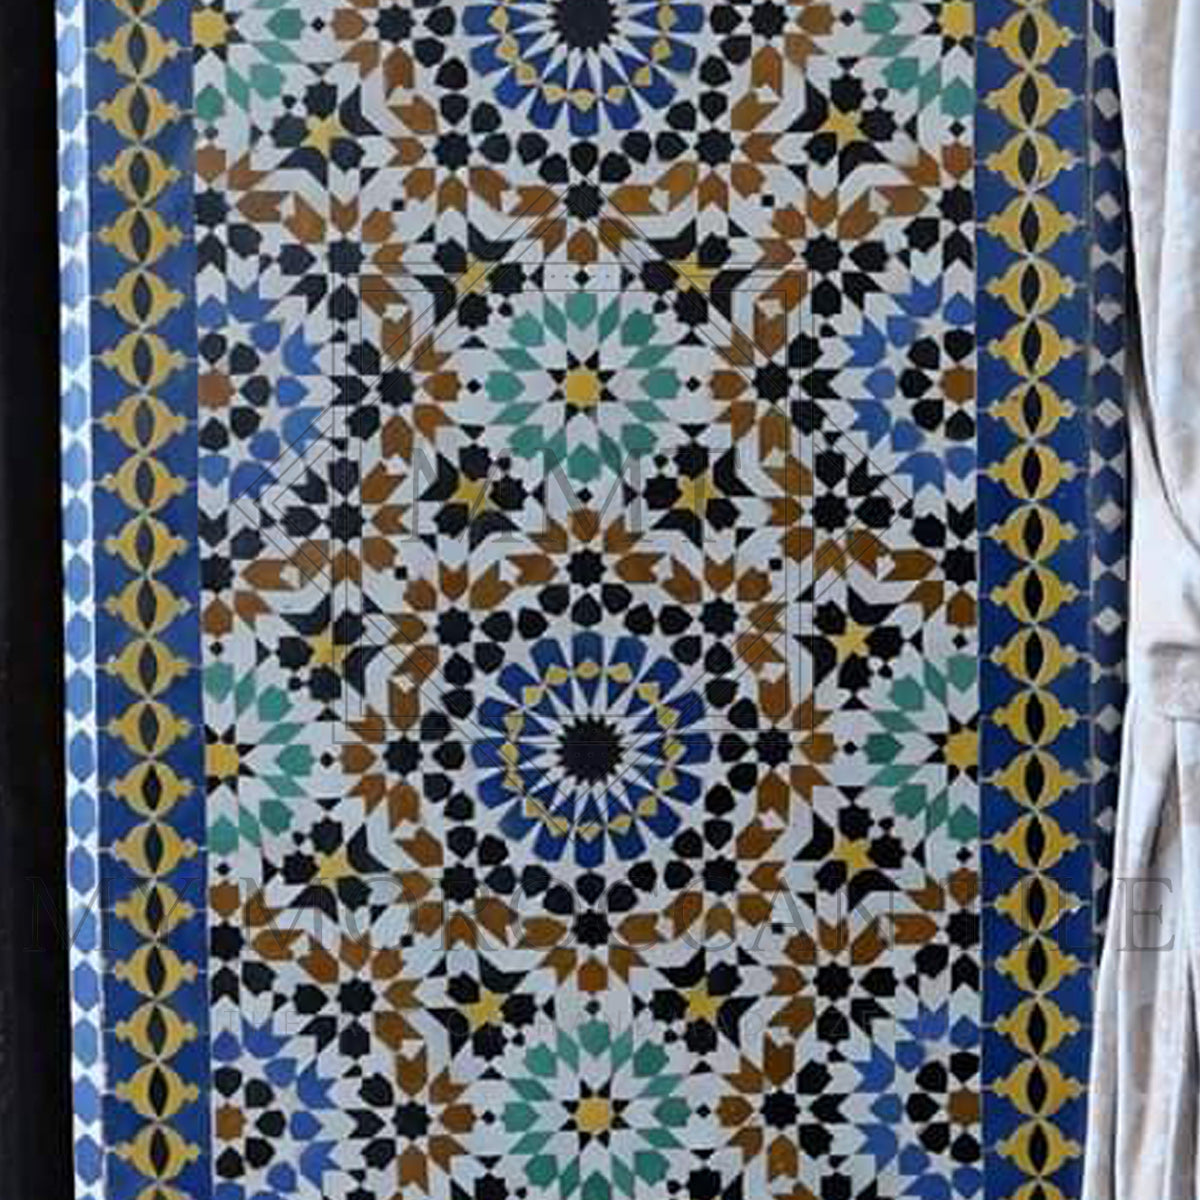 Riad Medina Mosaic Tile - 16.5